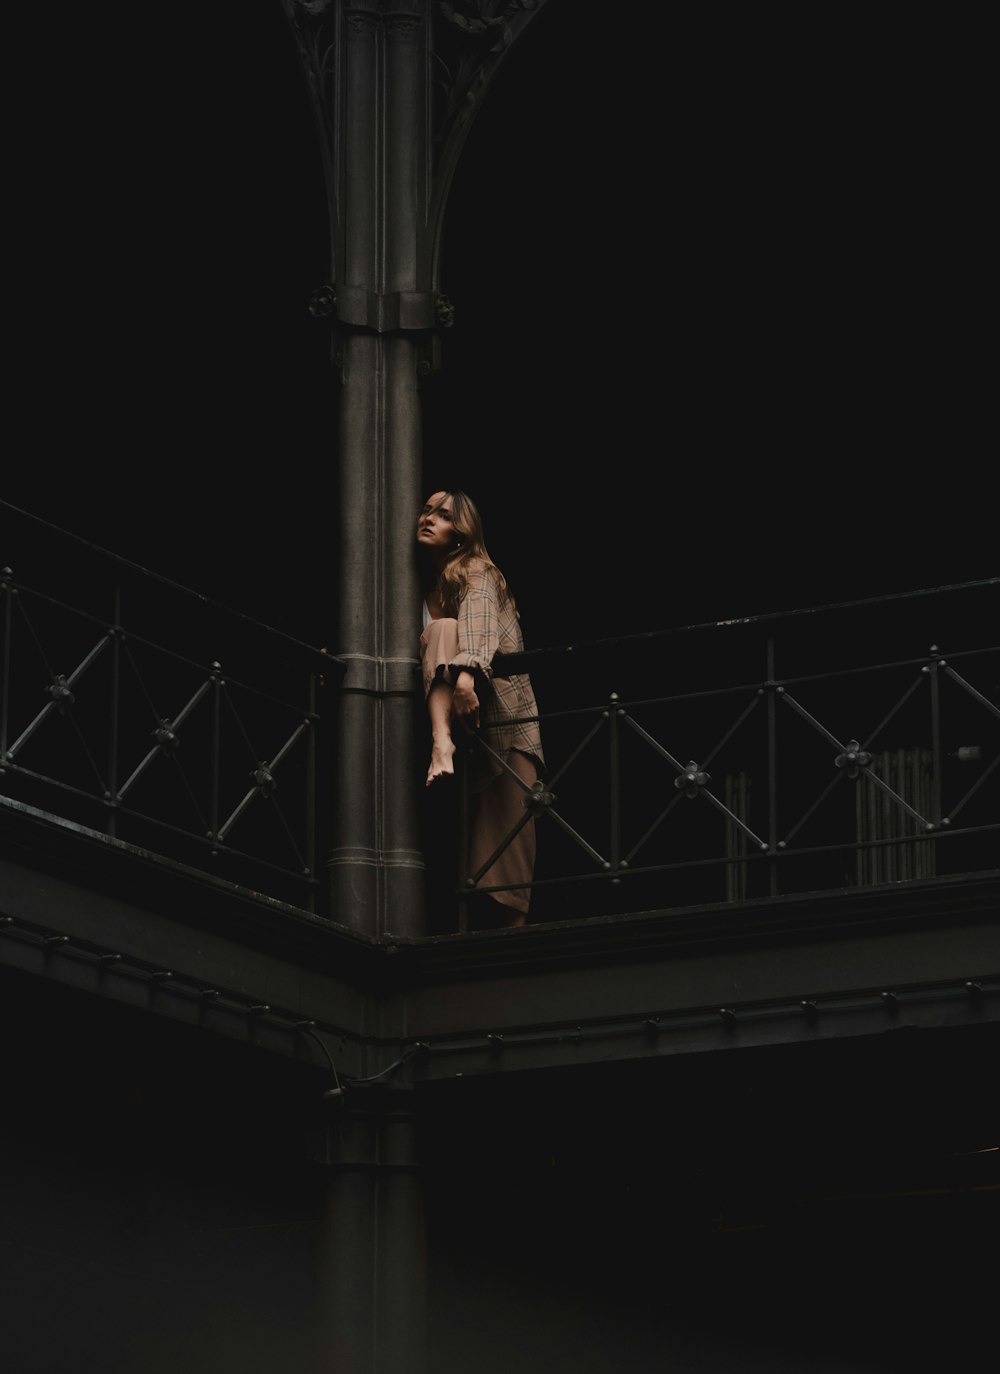 橋の上に立っている人